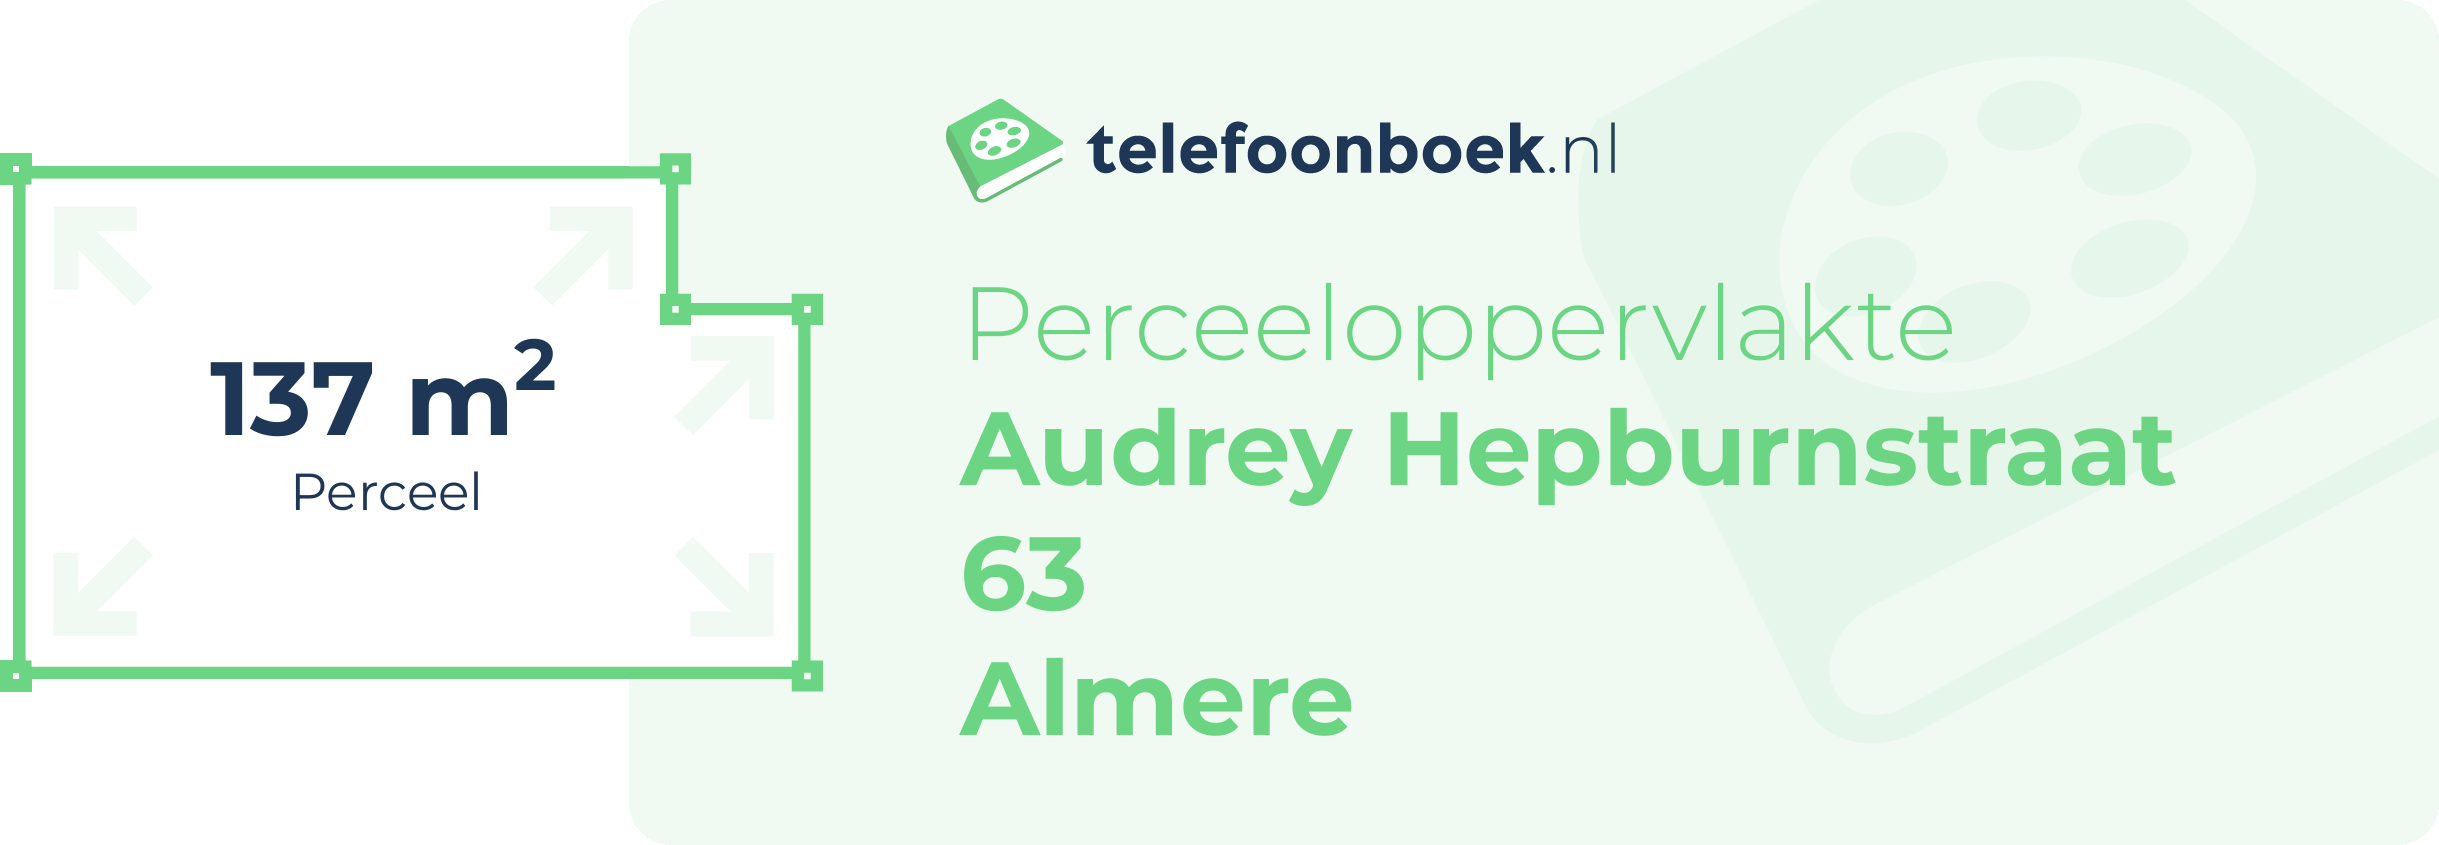 Perceeloppervlakte Audrey Hepburnstraat 63 Almere